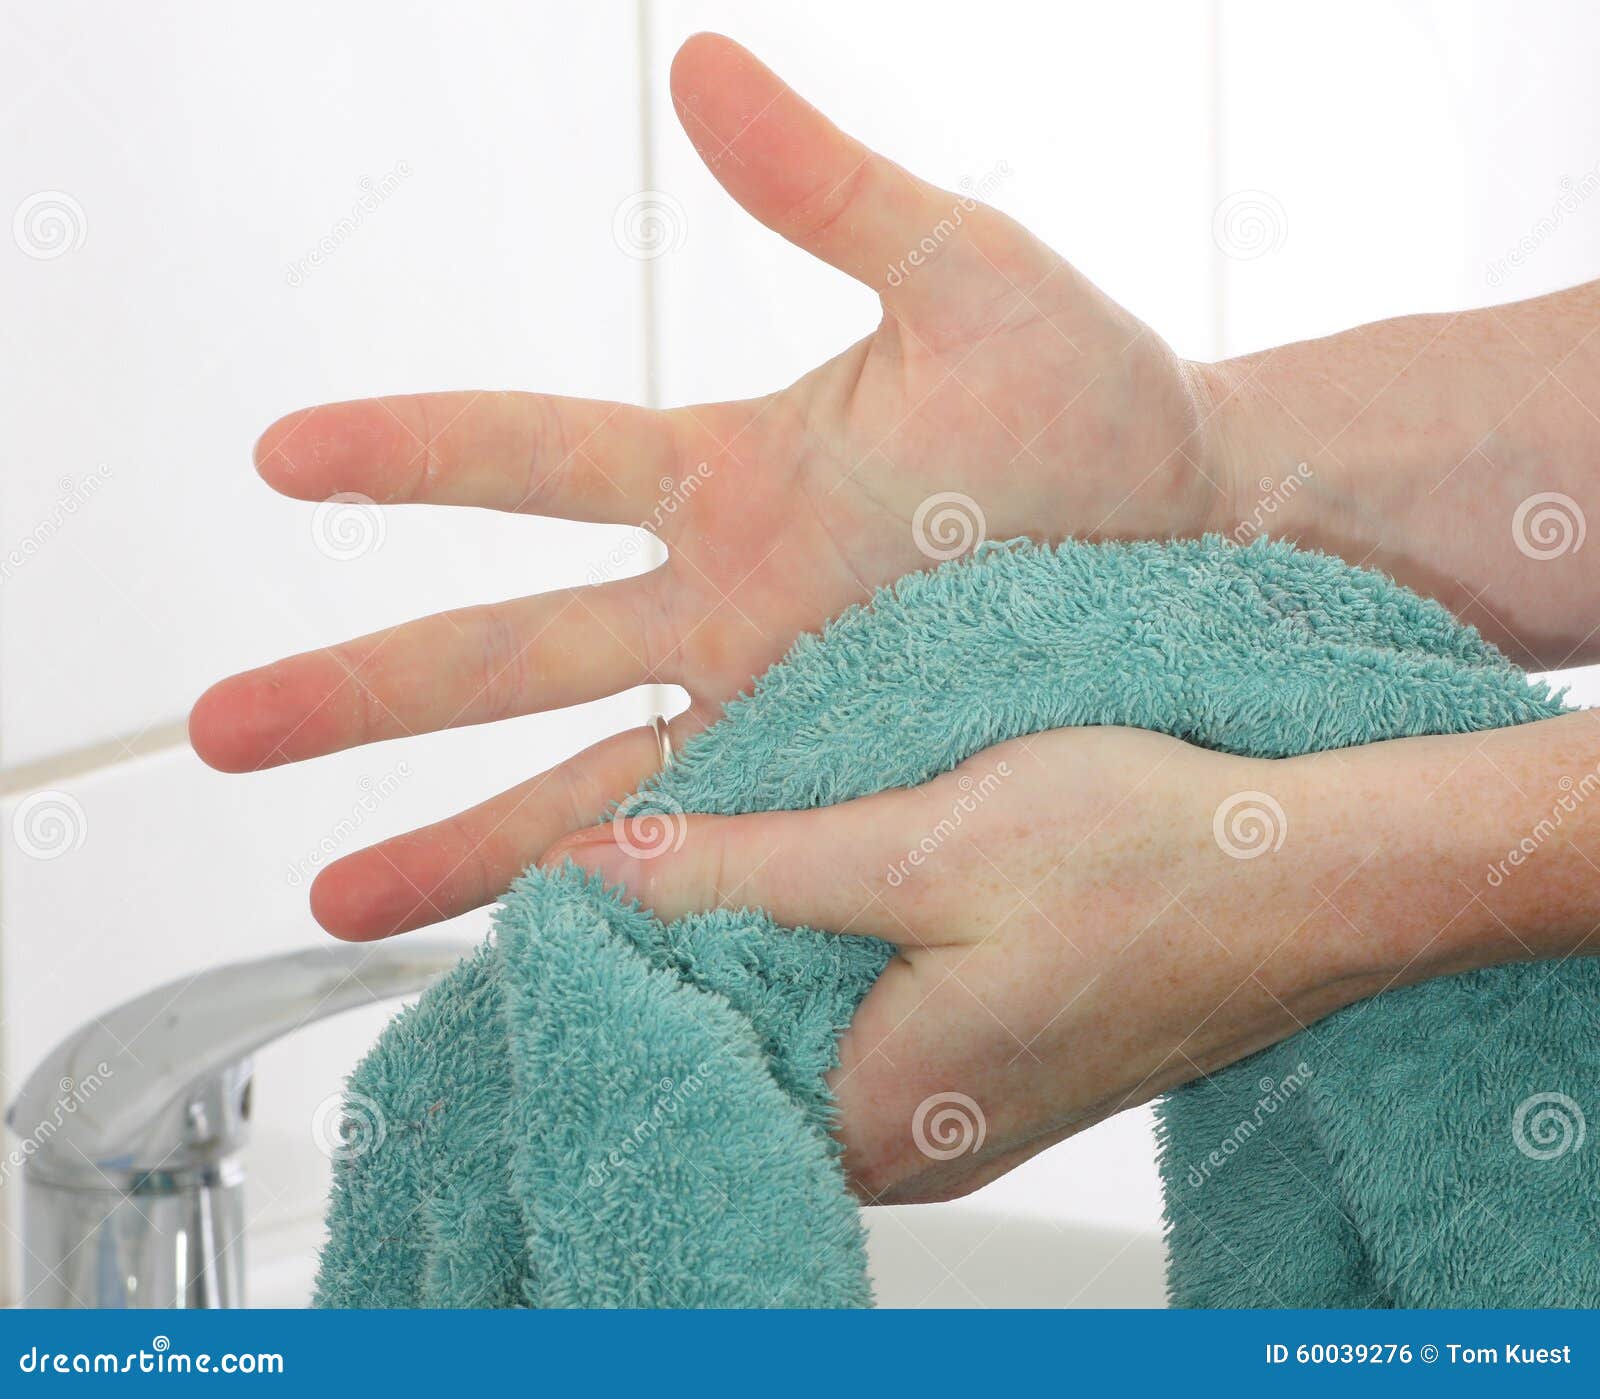 Рук 15 минут с. Вытирание рук полотенцем. Полотенце для вытерание рук. Полотенце для рук медперсонала. Вытирать руки детские.